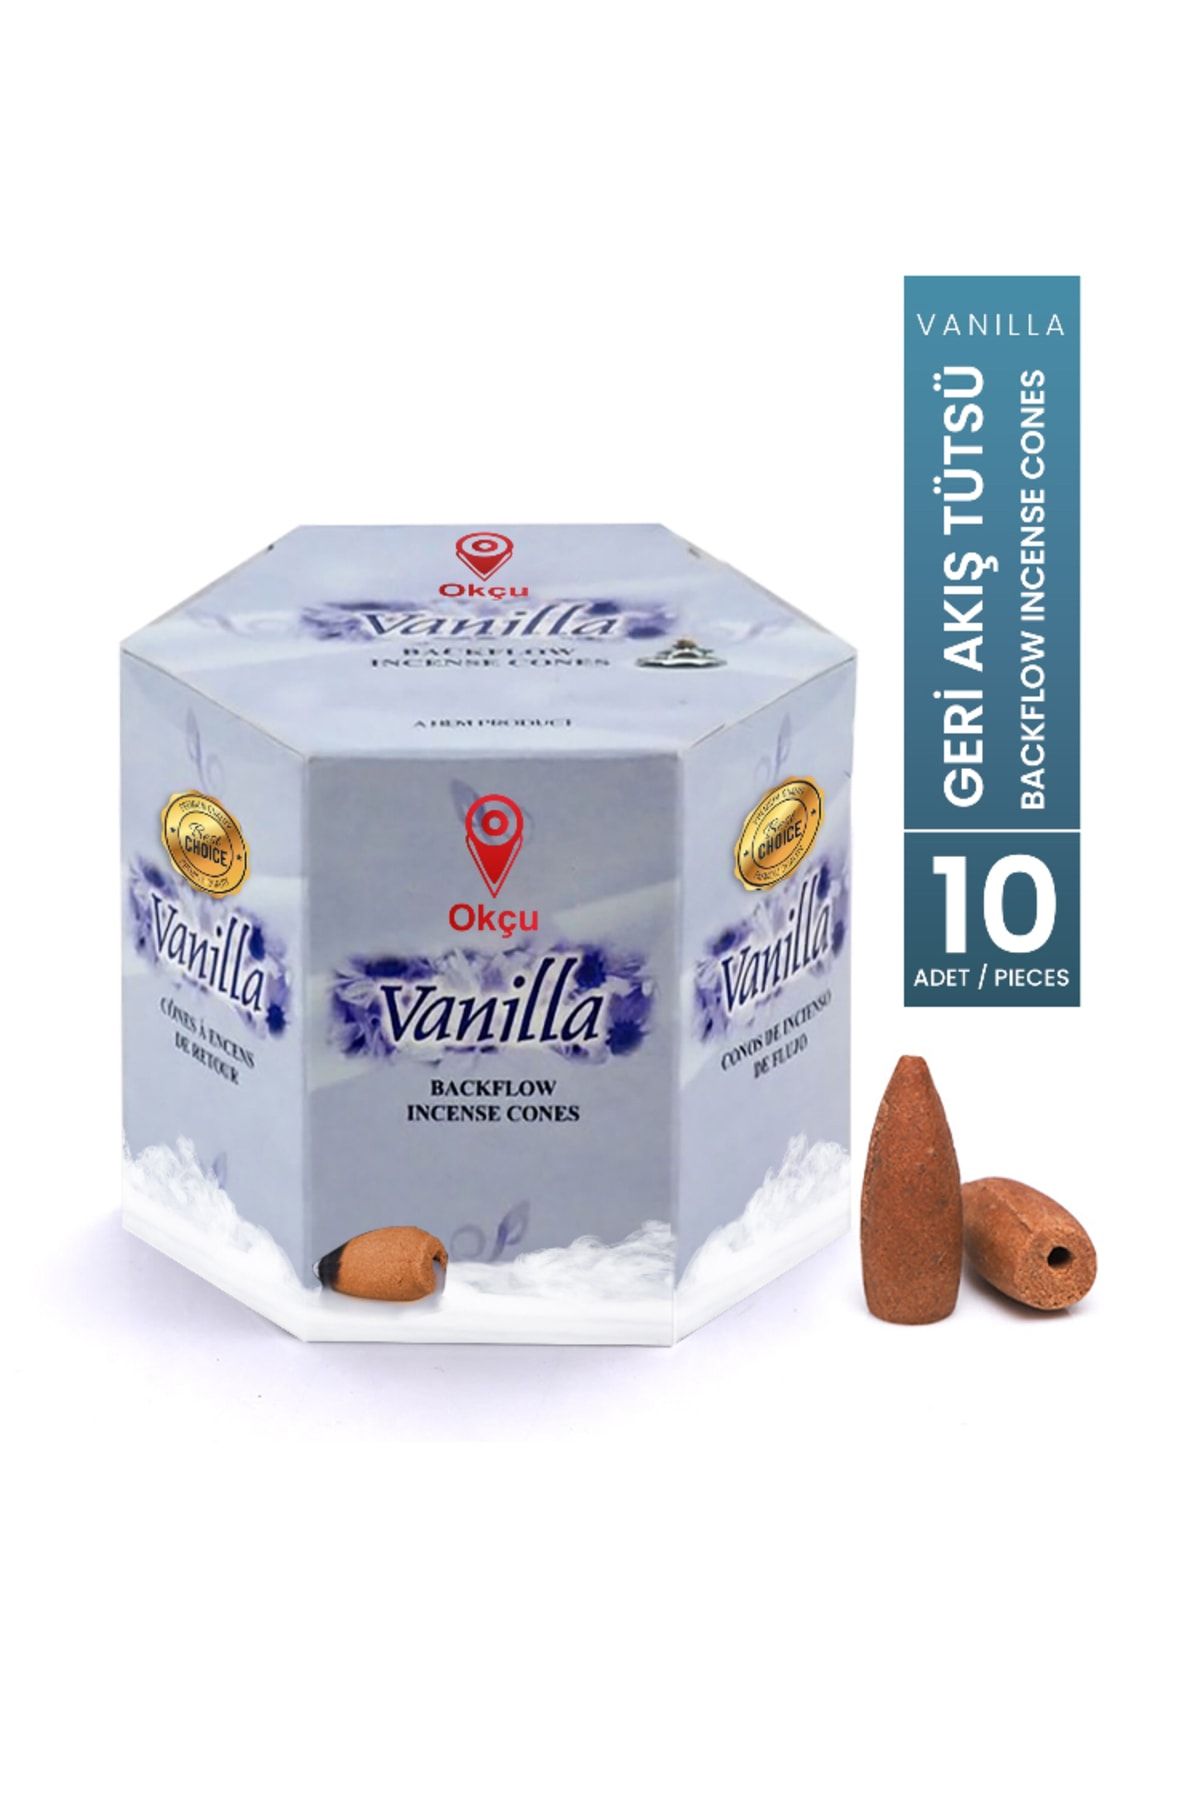 Okçu Vanilya Vanilla Geri Akış Tütsü Şelale Konik Backflow Incense Cones 10 Adet/ Pieces